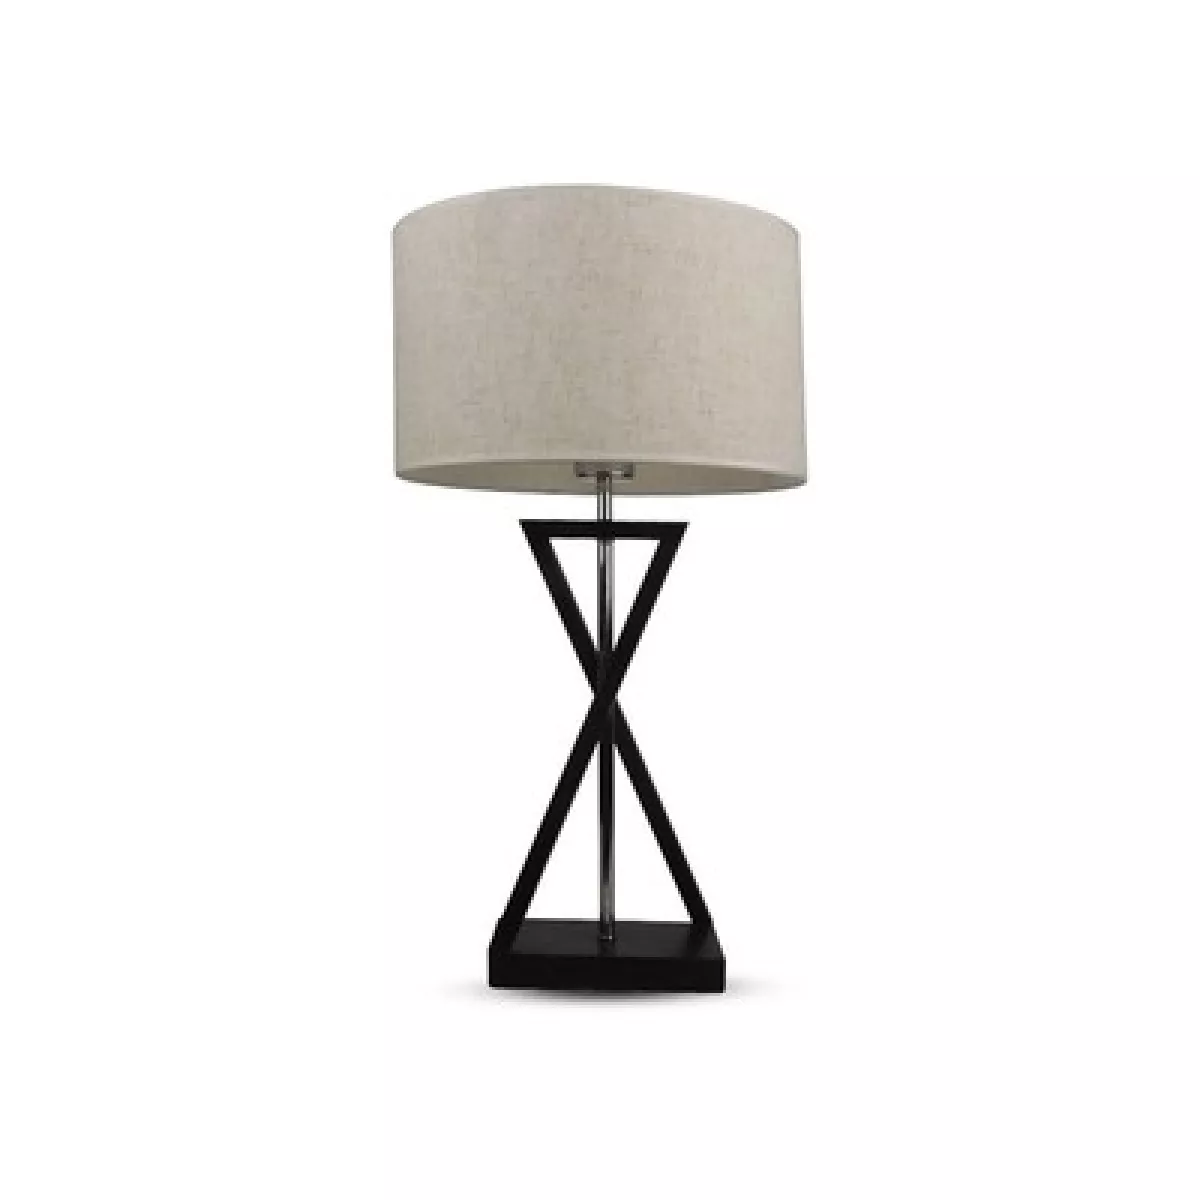 #1 - V-Tac moderne designer bordlampe - Hvid/sort, 1,5 meter ledning, E27 fatning, uden lyskilde